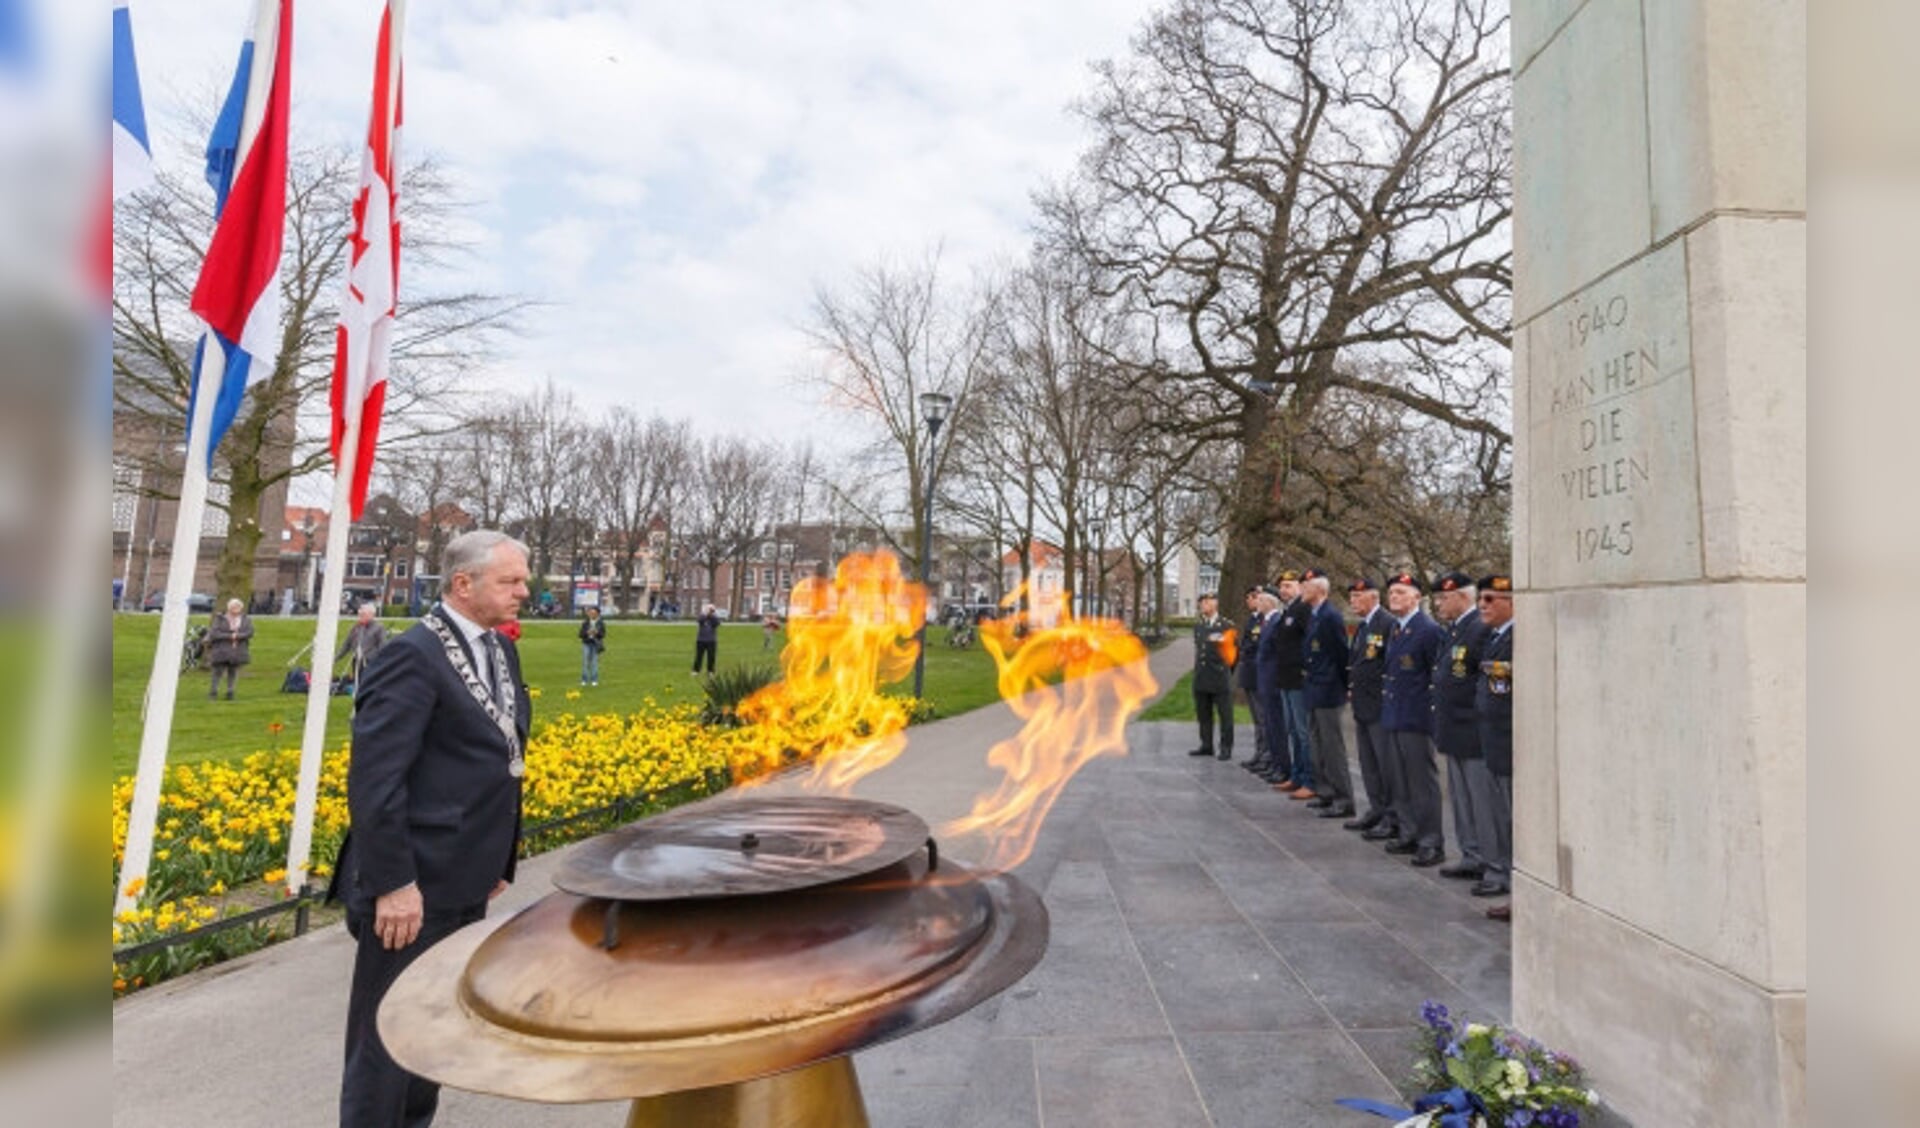  Herdenking bevrijding Zwolle in het Pelkwijkpark bij het monument.